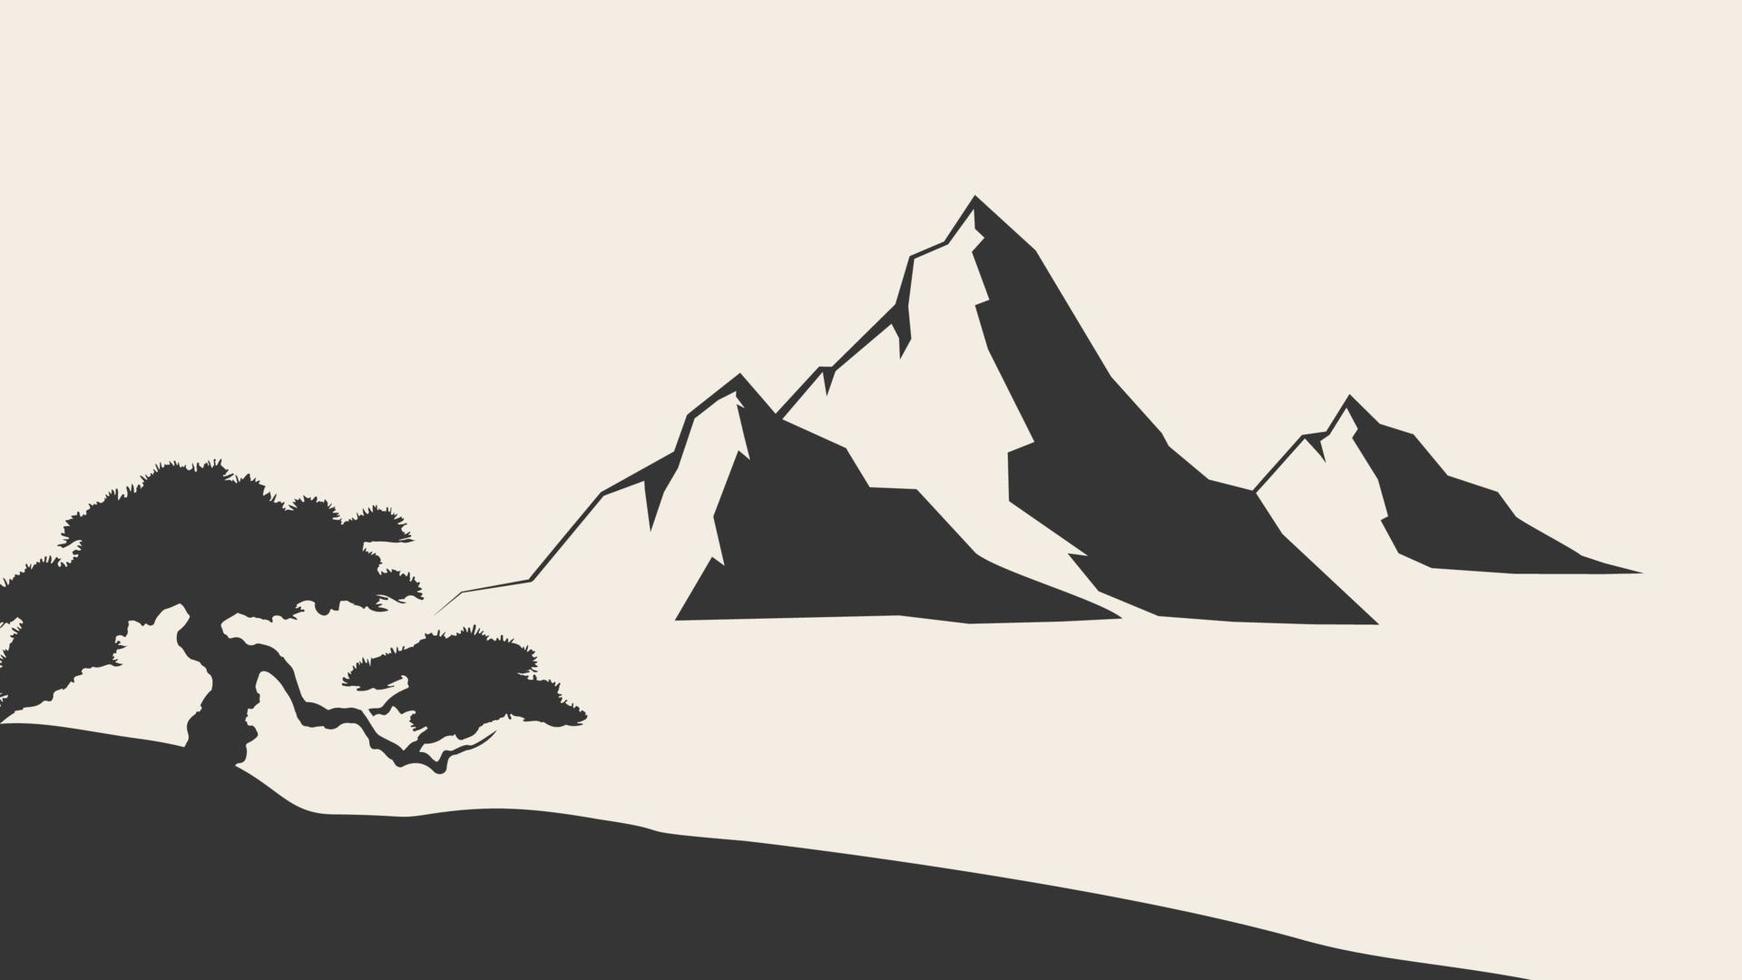 montagnes vector.mountain gamme silhouette illustration vectorielle isolée. silhouette des montagnes vecteur